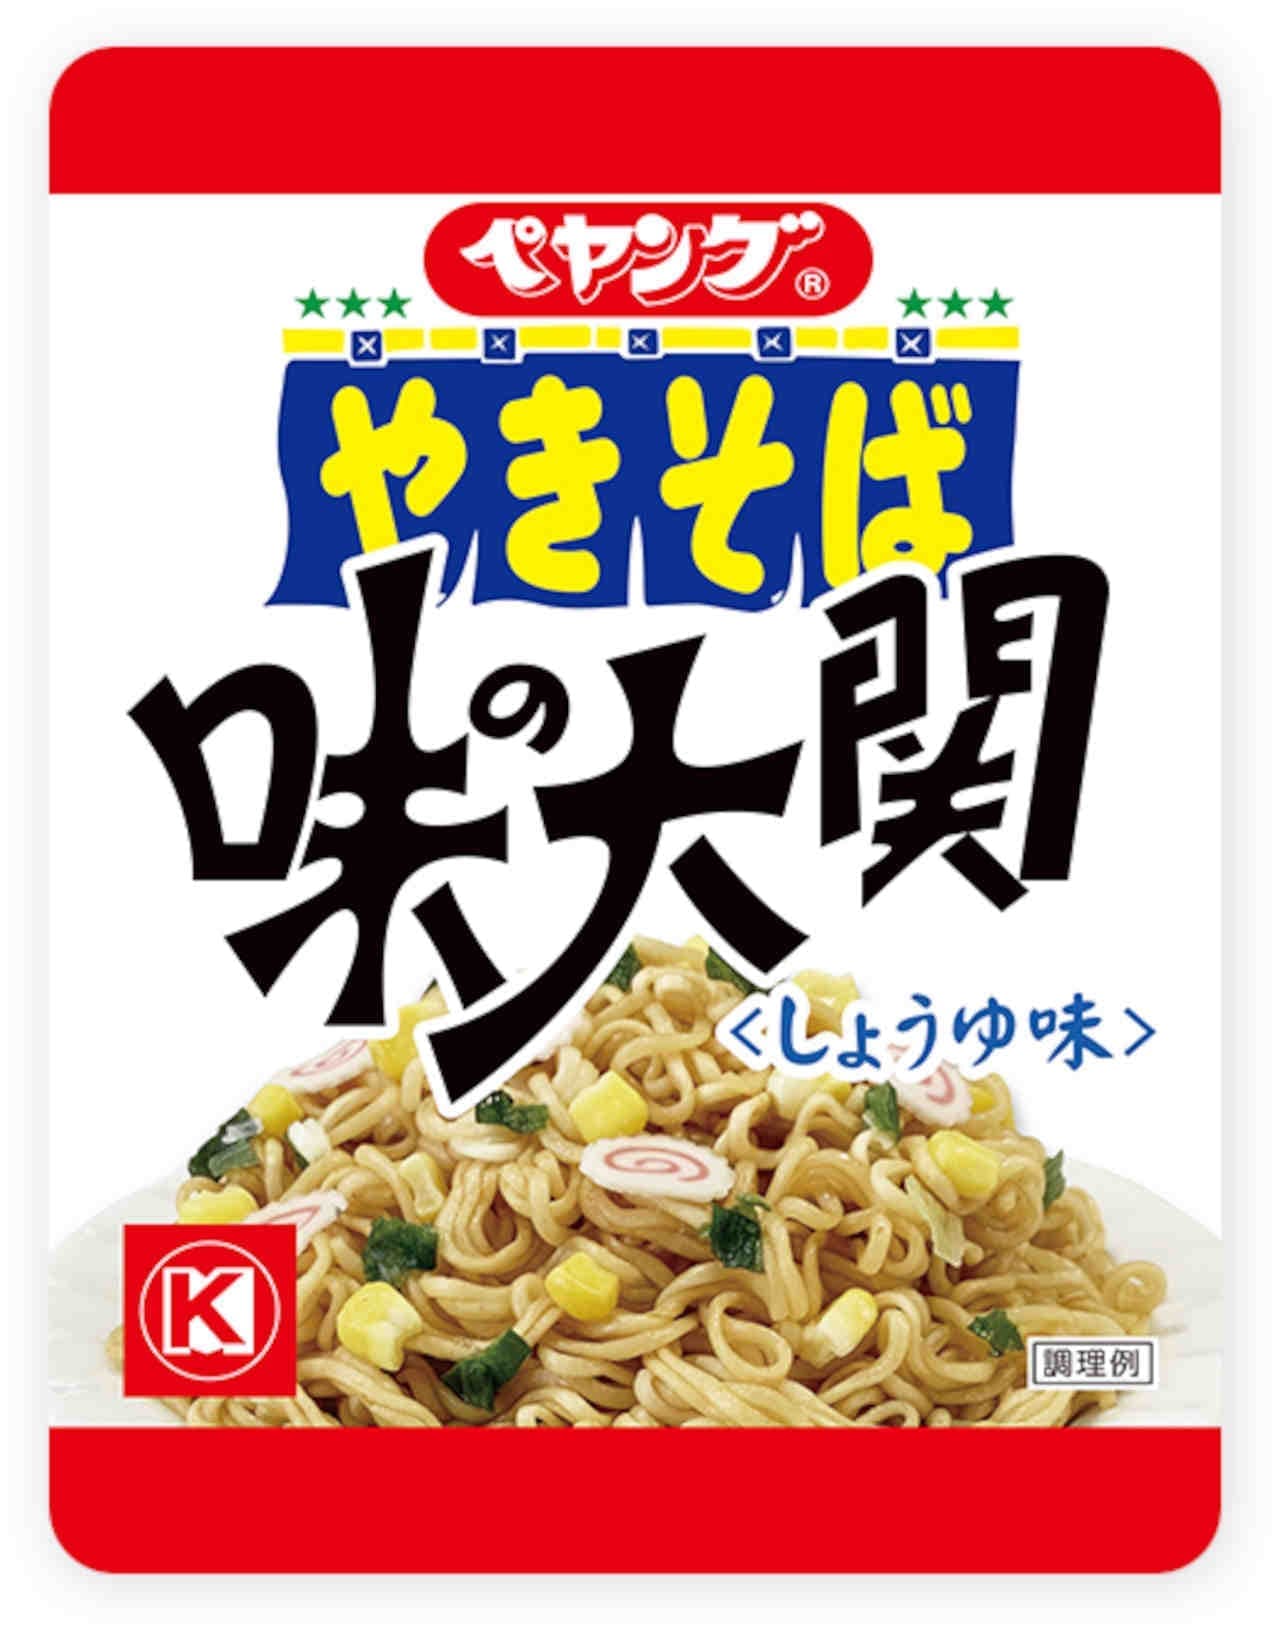 Maruka Foods "Peyoung Aji no Ozeki Yakisoba